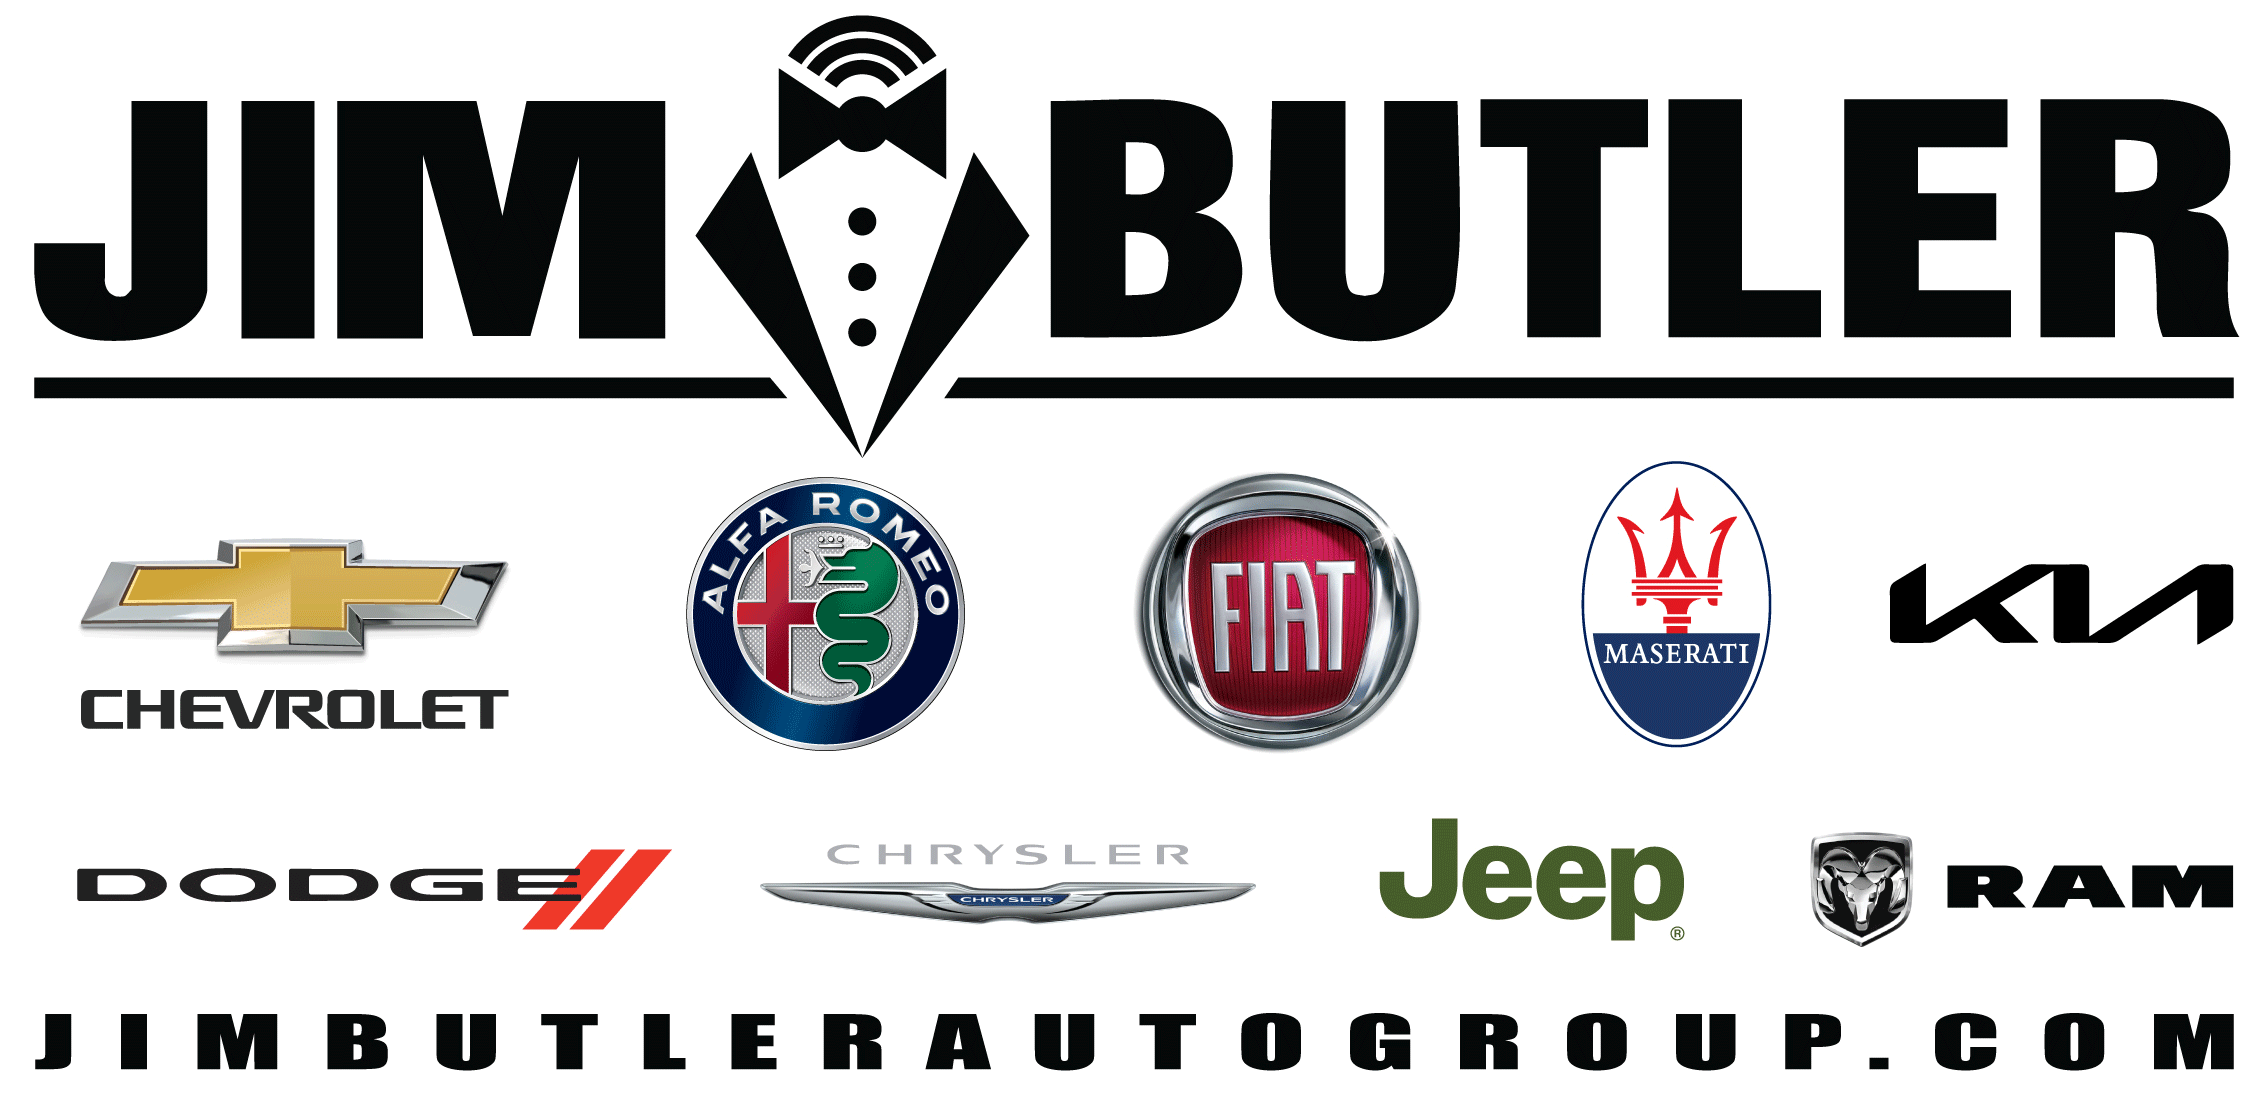 Jim Butler Autogroup - www.jimbutlerchevrolet.com